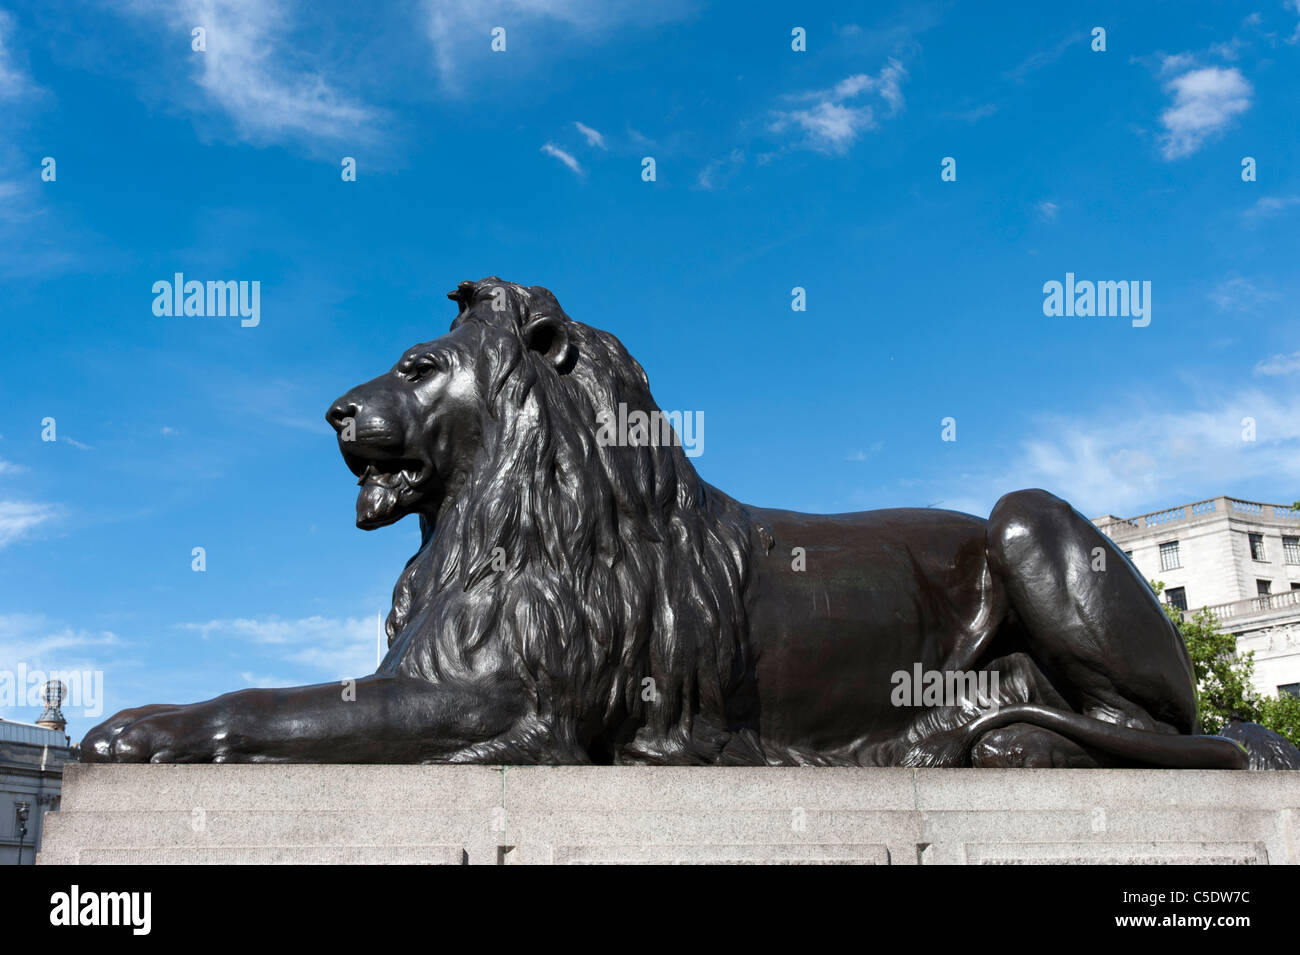 Landseer lion statue in Trafalgar Square, London, England, UK Stock Photo